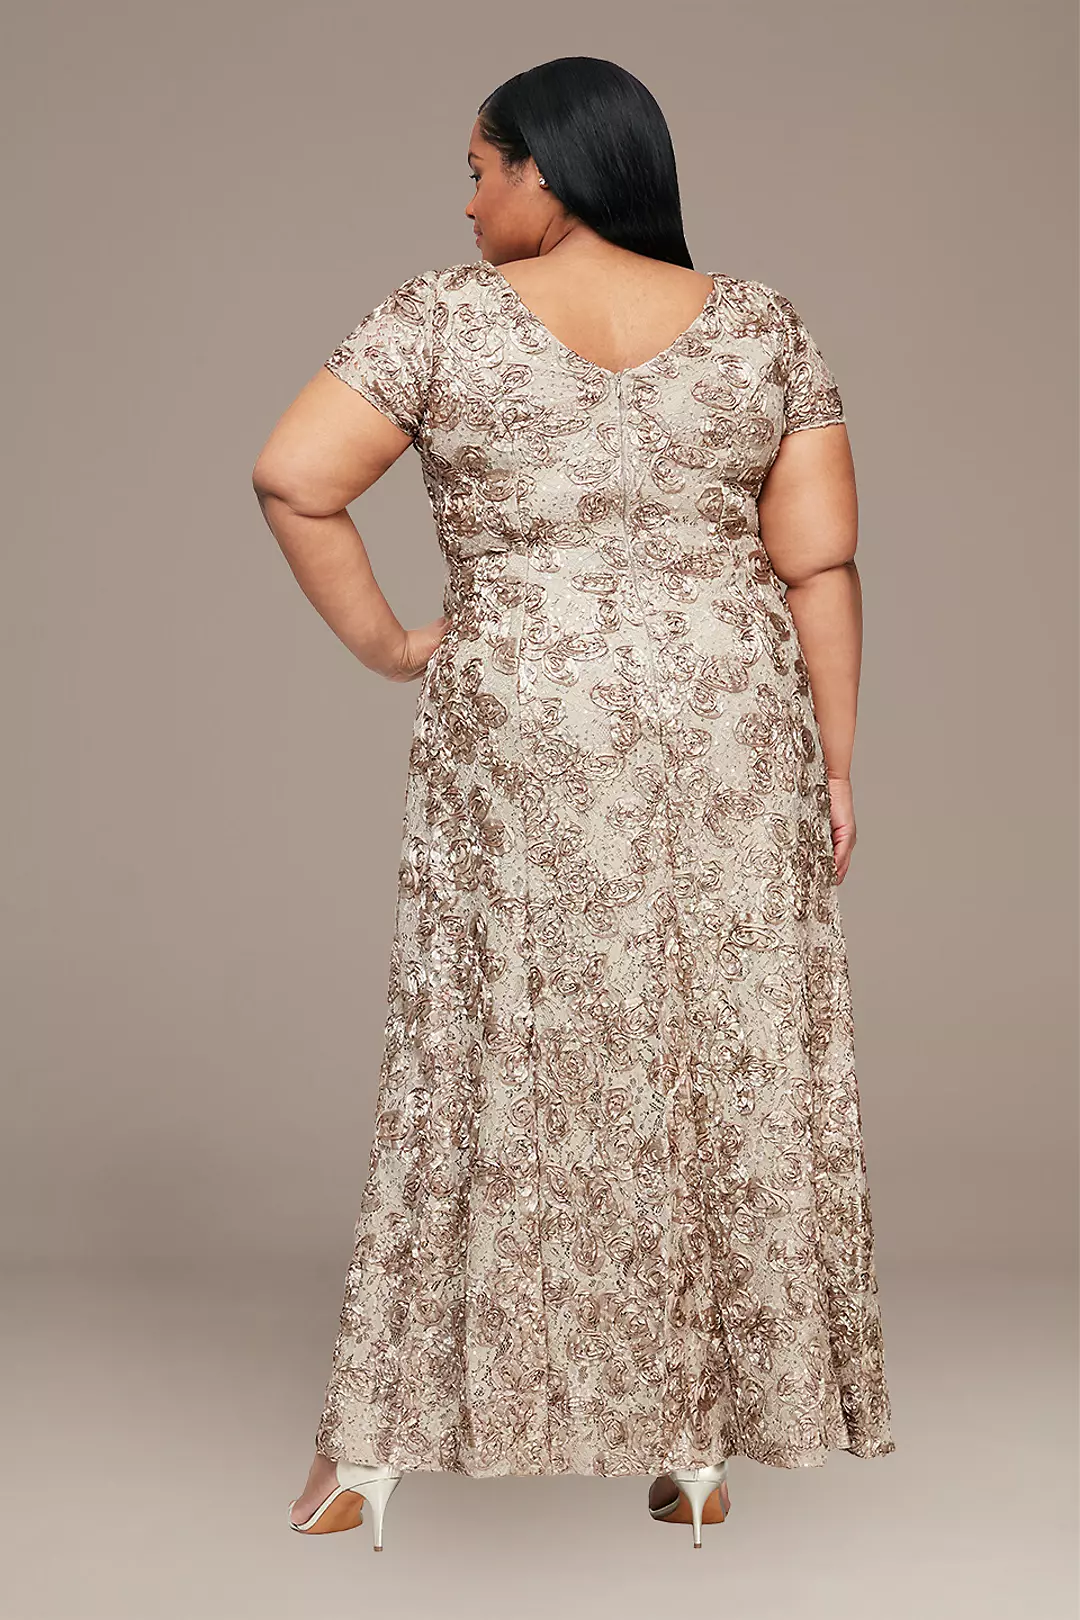 Rosette Lace Cap Sleeve A-Line Plus Size Gown Image 2